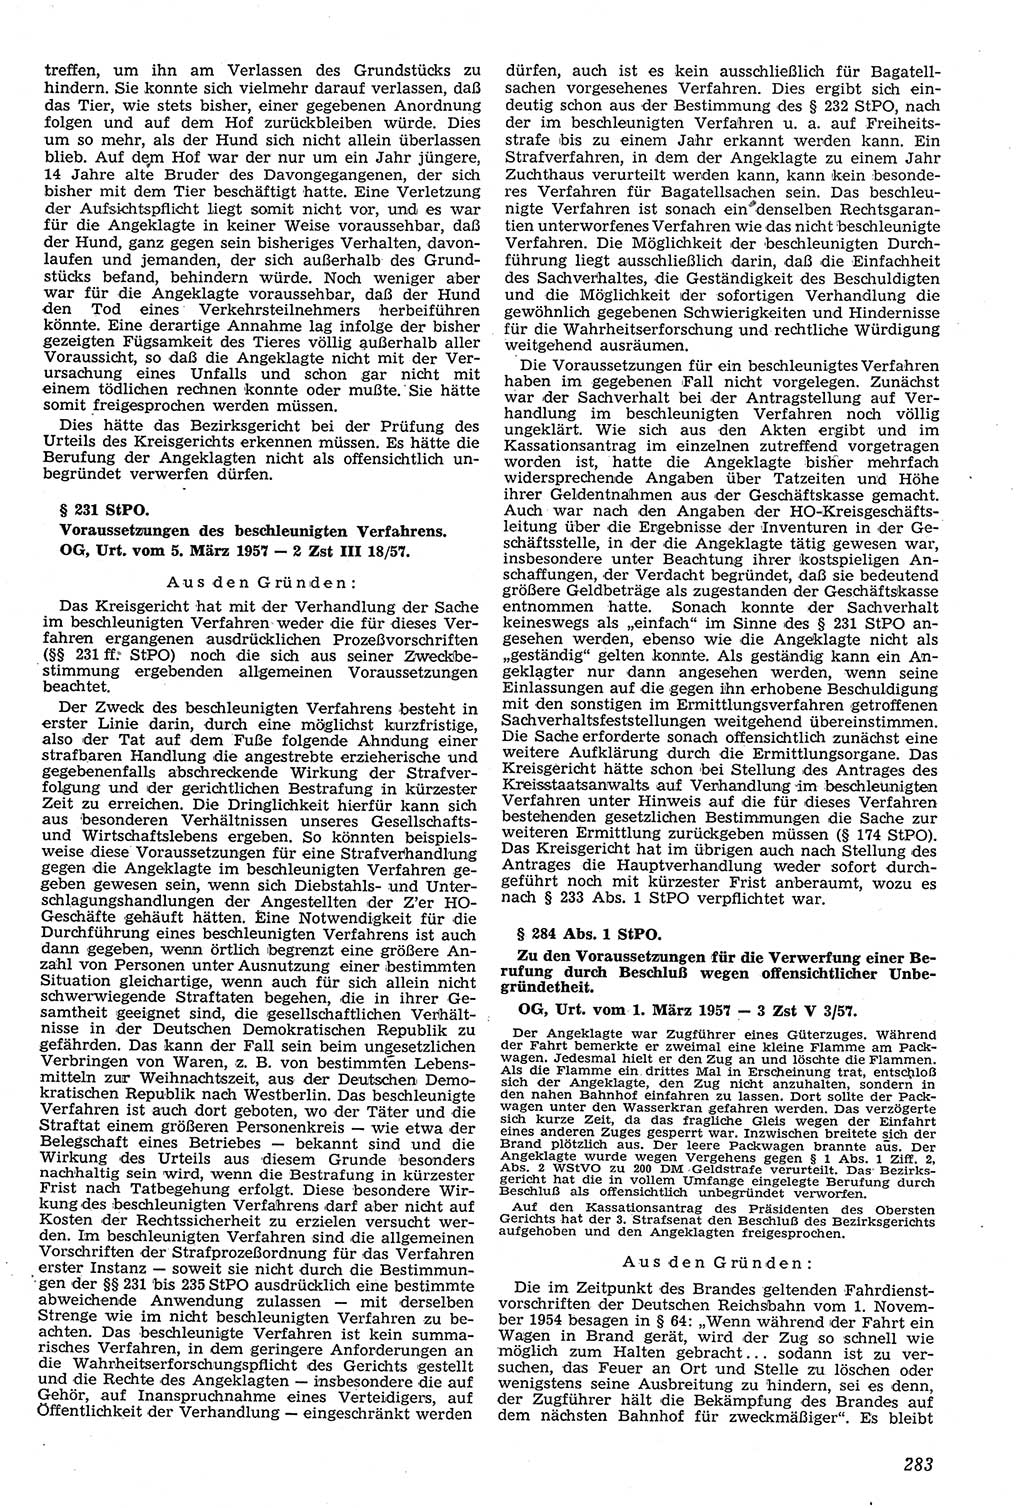 Neue Justiz (NJ), Zeitschrift für Recht und Rechtswissenschaft [Deutsche Demokratische Republik (DDR)], 11. Jahrgang 1957, Seite 283 (NJ DDR 1957, S. 283)